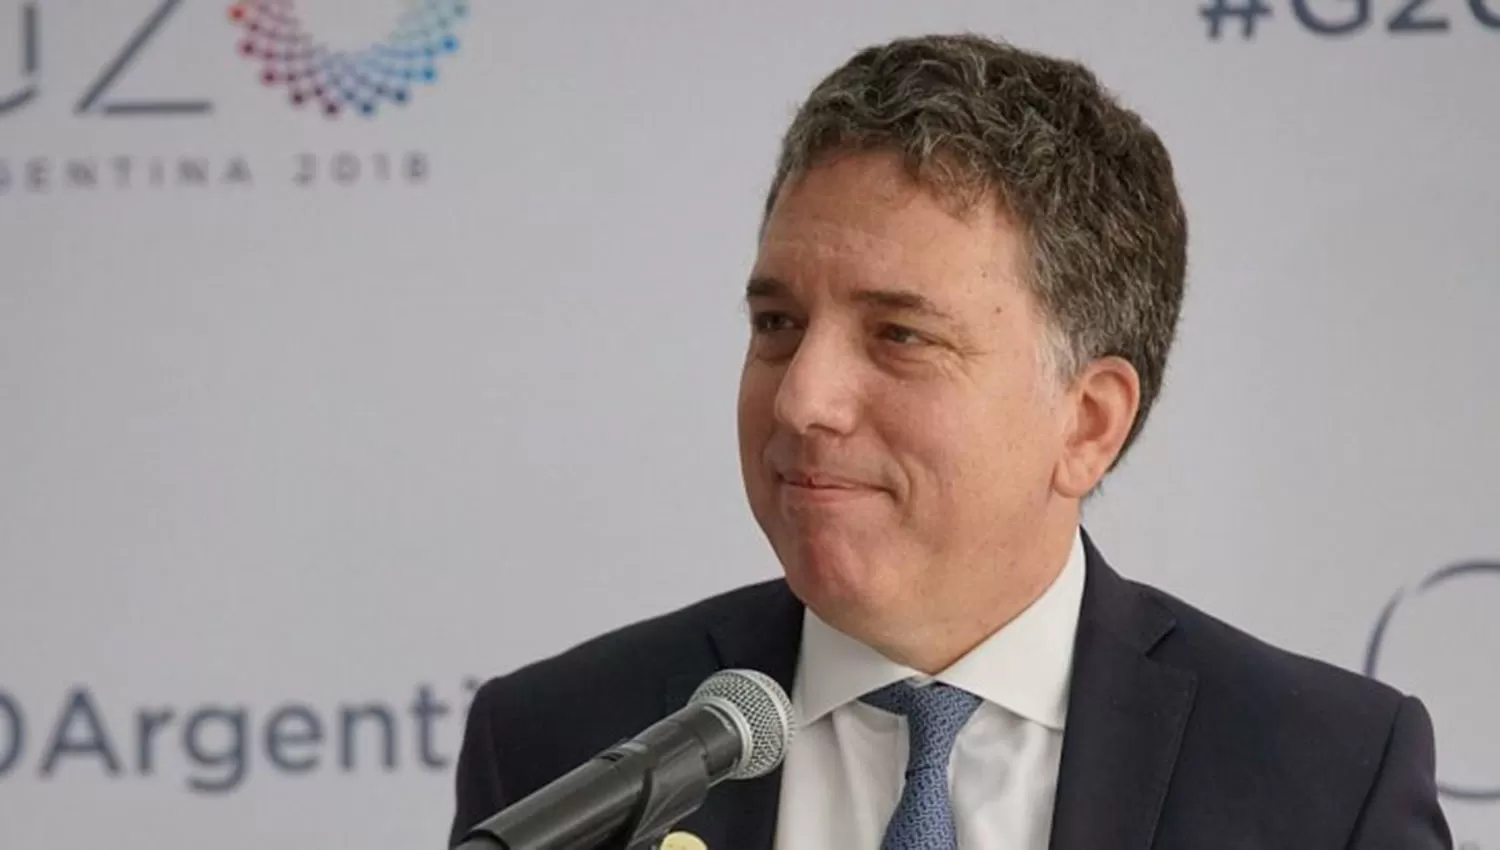 Dujovne calificó de avanzadas la negociaciones para que Argentina ingrese a la OCDE